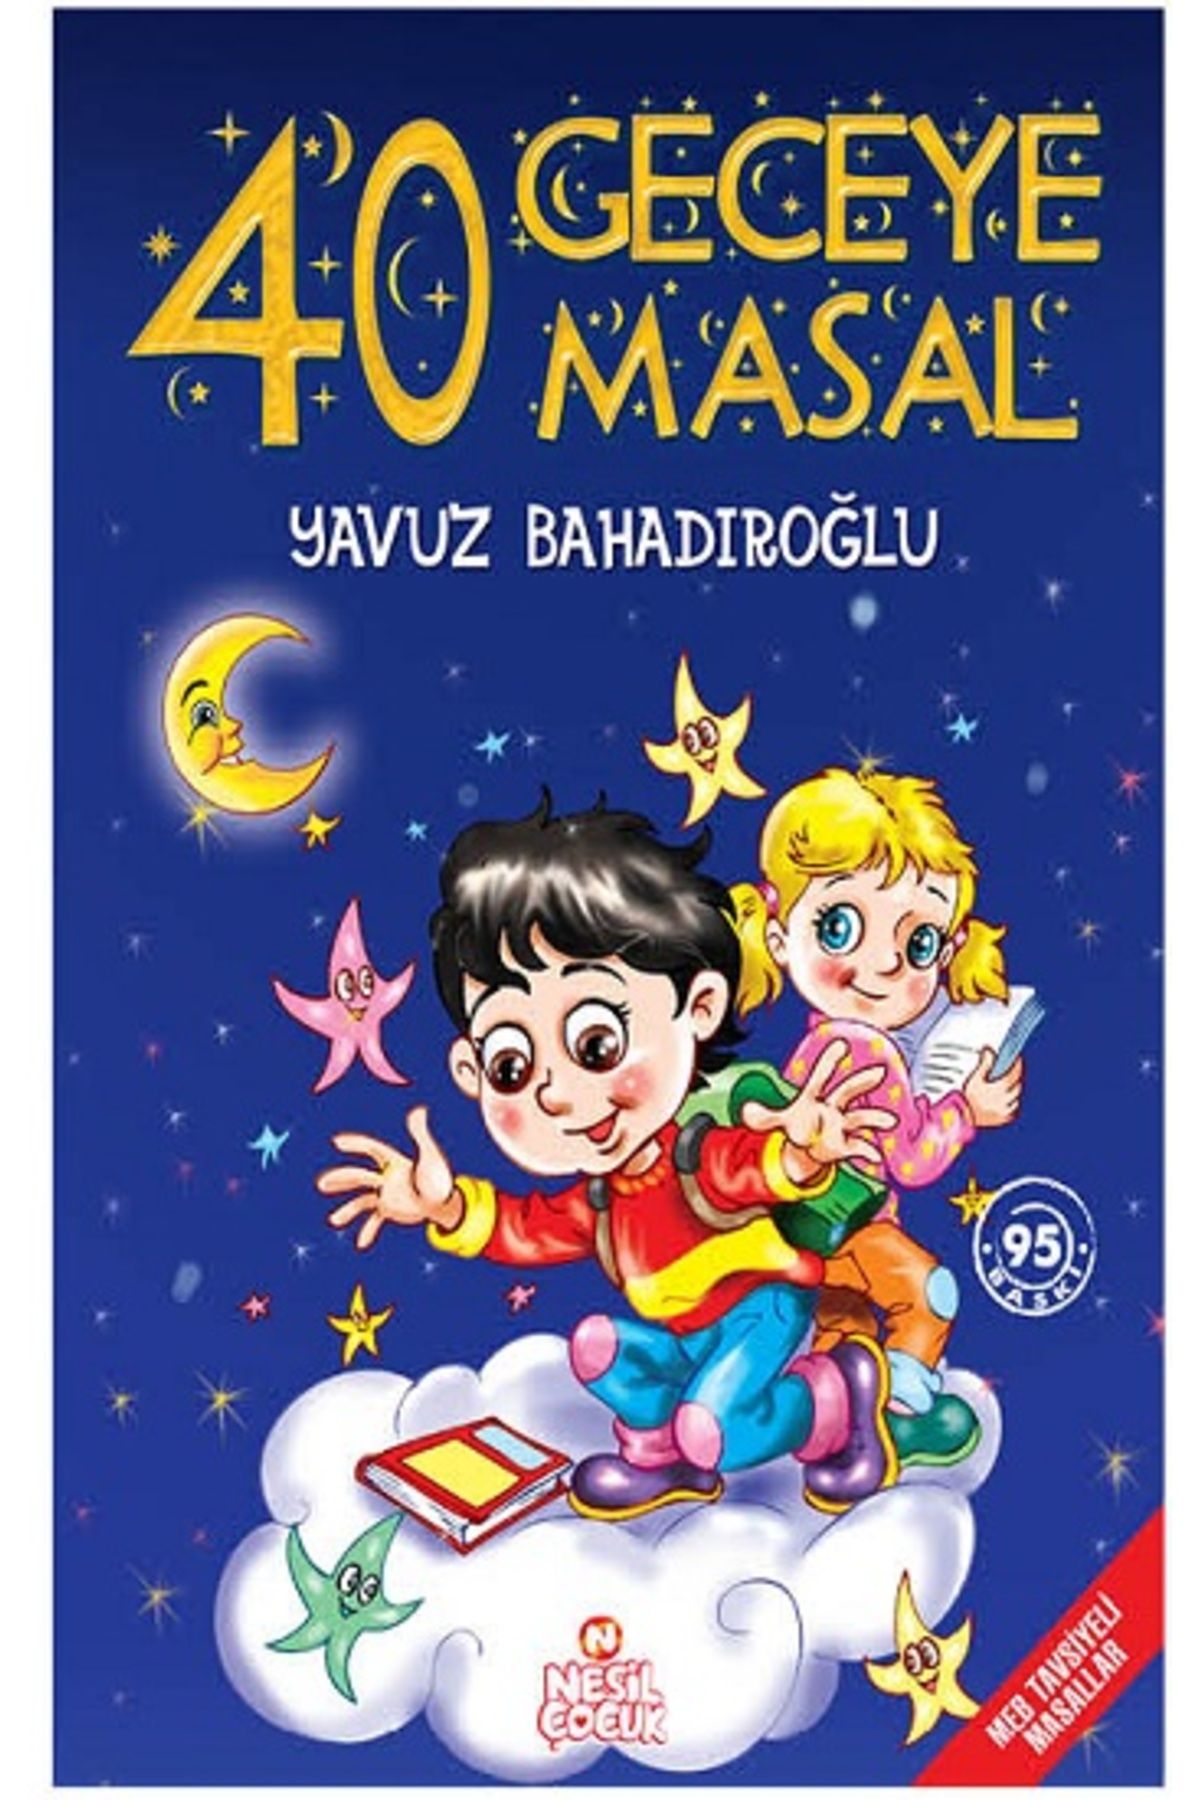 Genel Markalar Yavuz Bahadıroğlu 40 Geceye 40 Masal